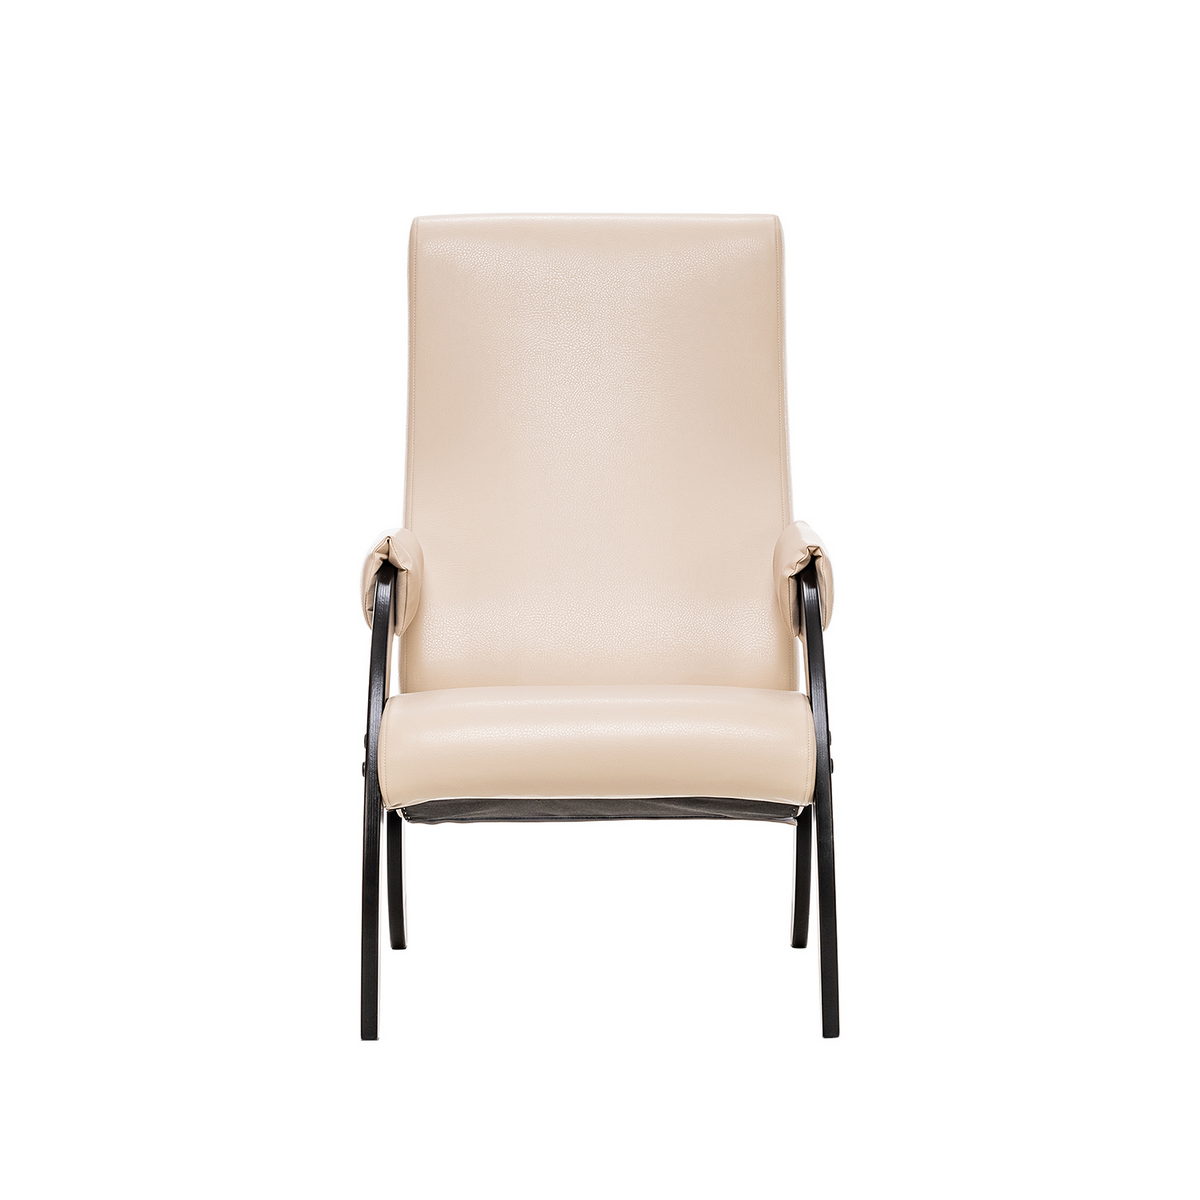 Кресло для отдыха Модель 61М (Импэкс). Цвет каркаса: Венге; Цвет обивки: Polaris Beige